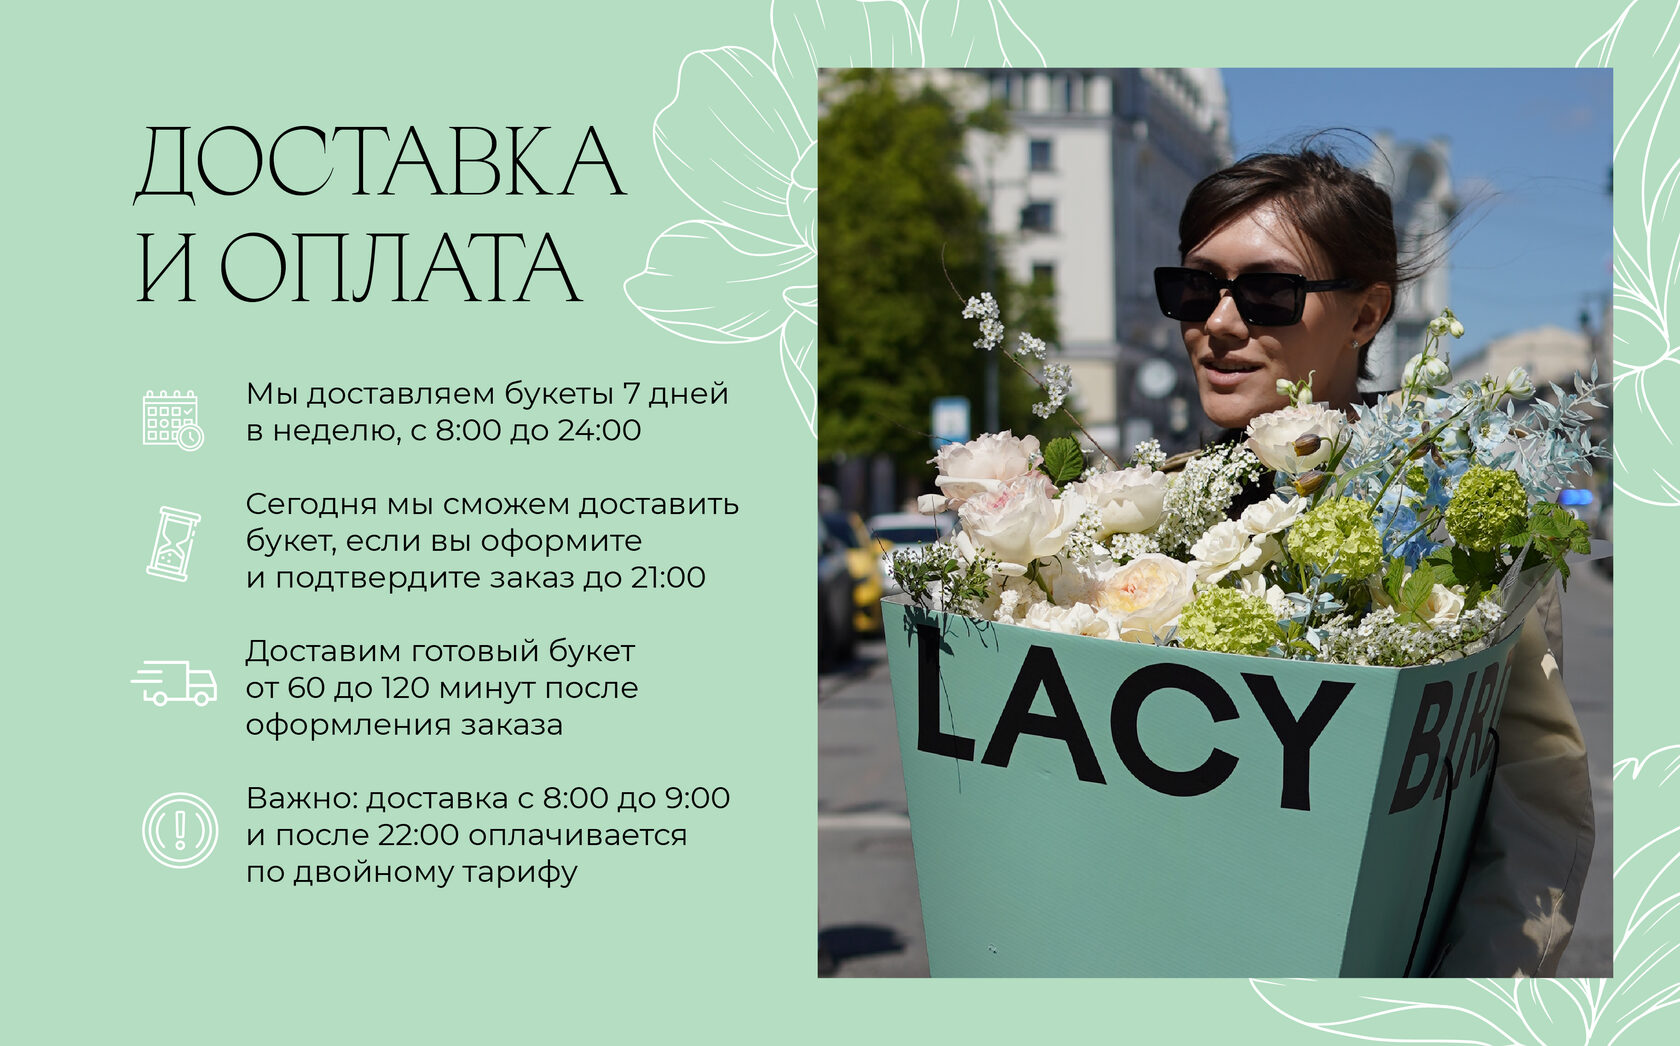 Окупить цветочный магазин можно за один год | Деловой квартал вороковский.рф — новости Екатеринбурга